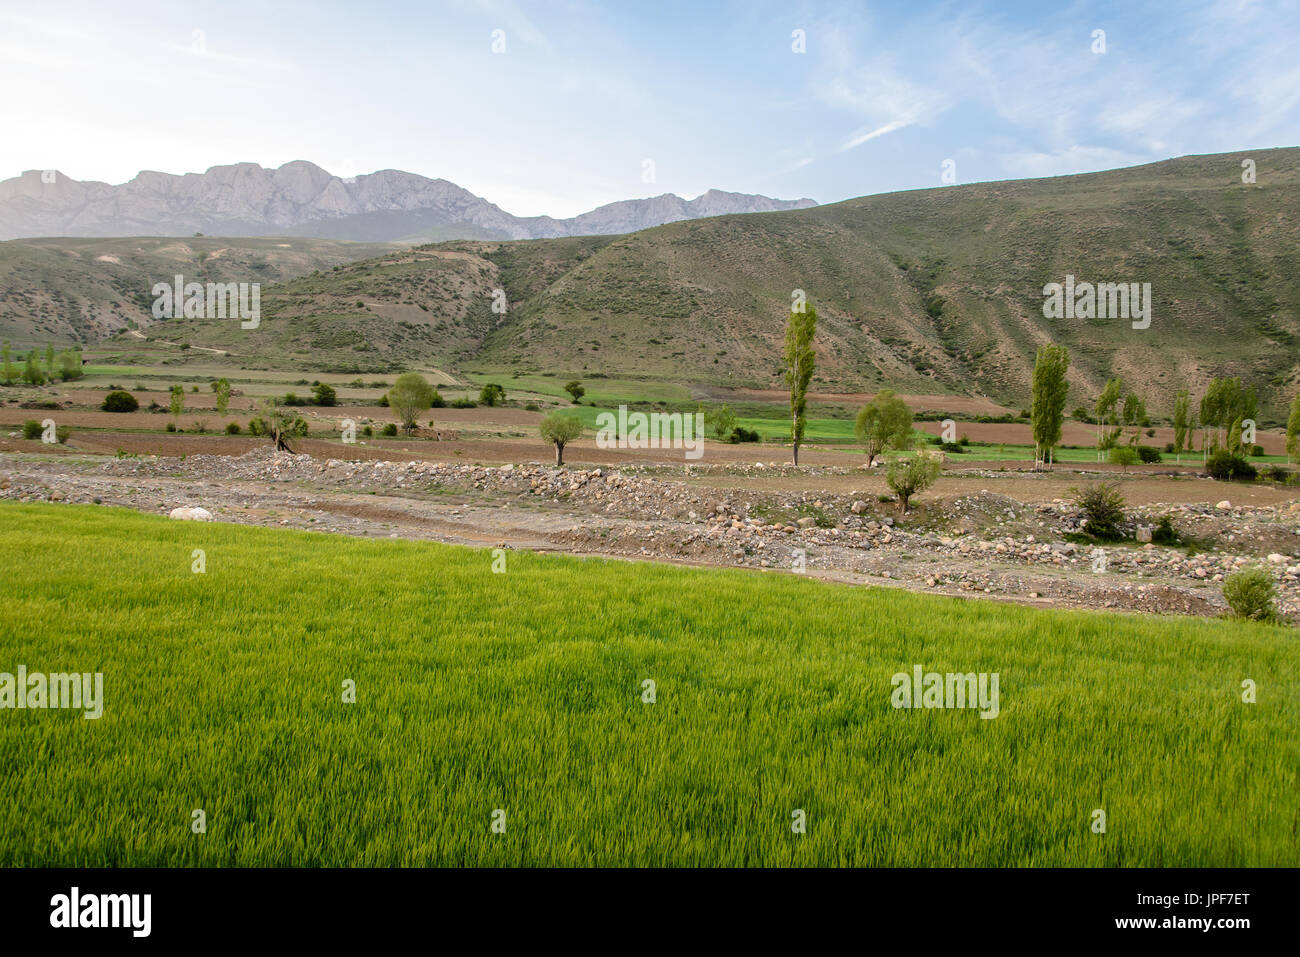 Mountain view around Badab-e Surt, Iran Stock Photo